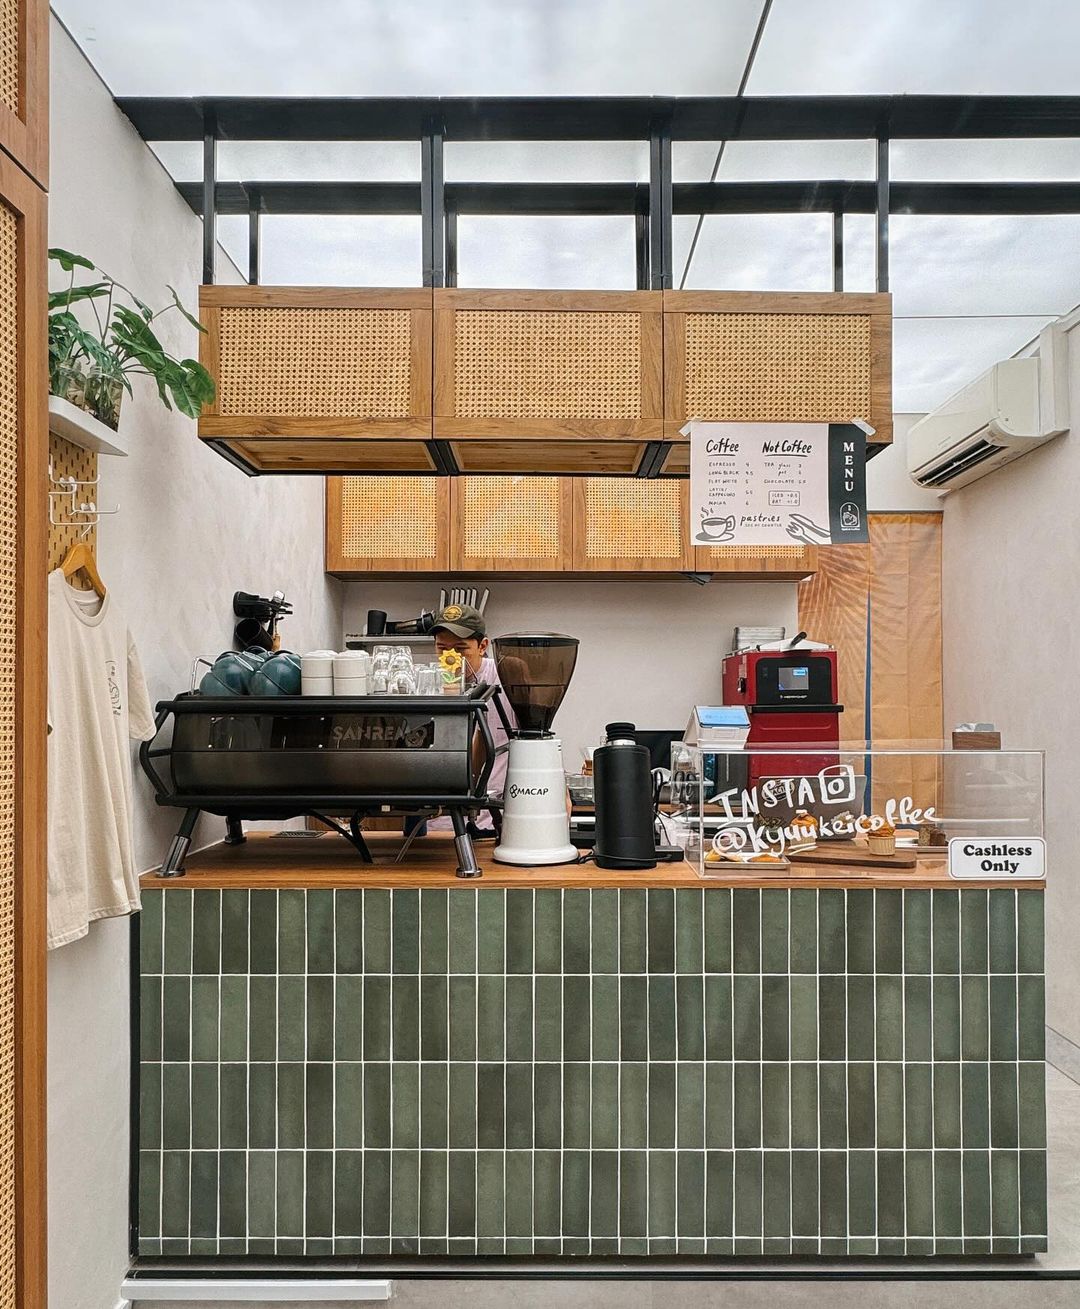 Kyuukei-Coffee-cafe-interior (5)